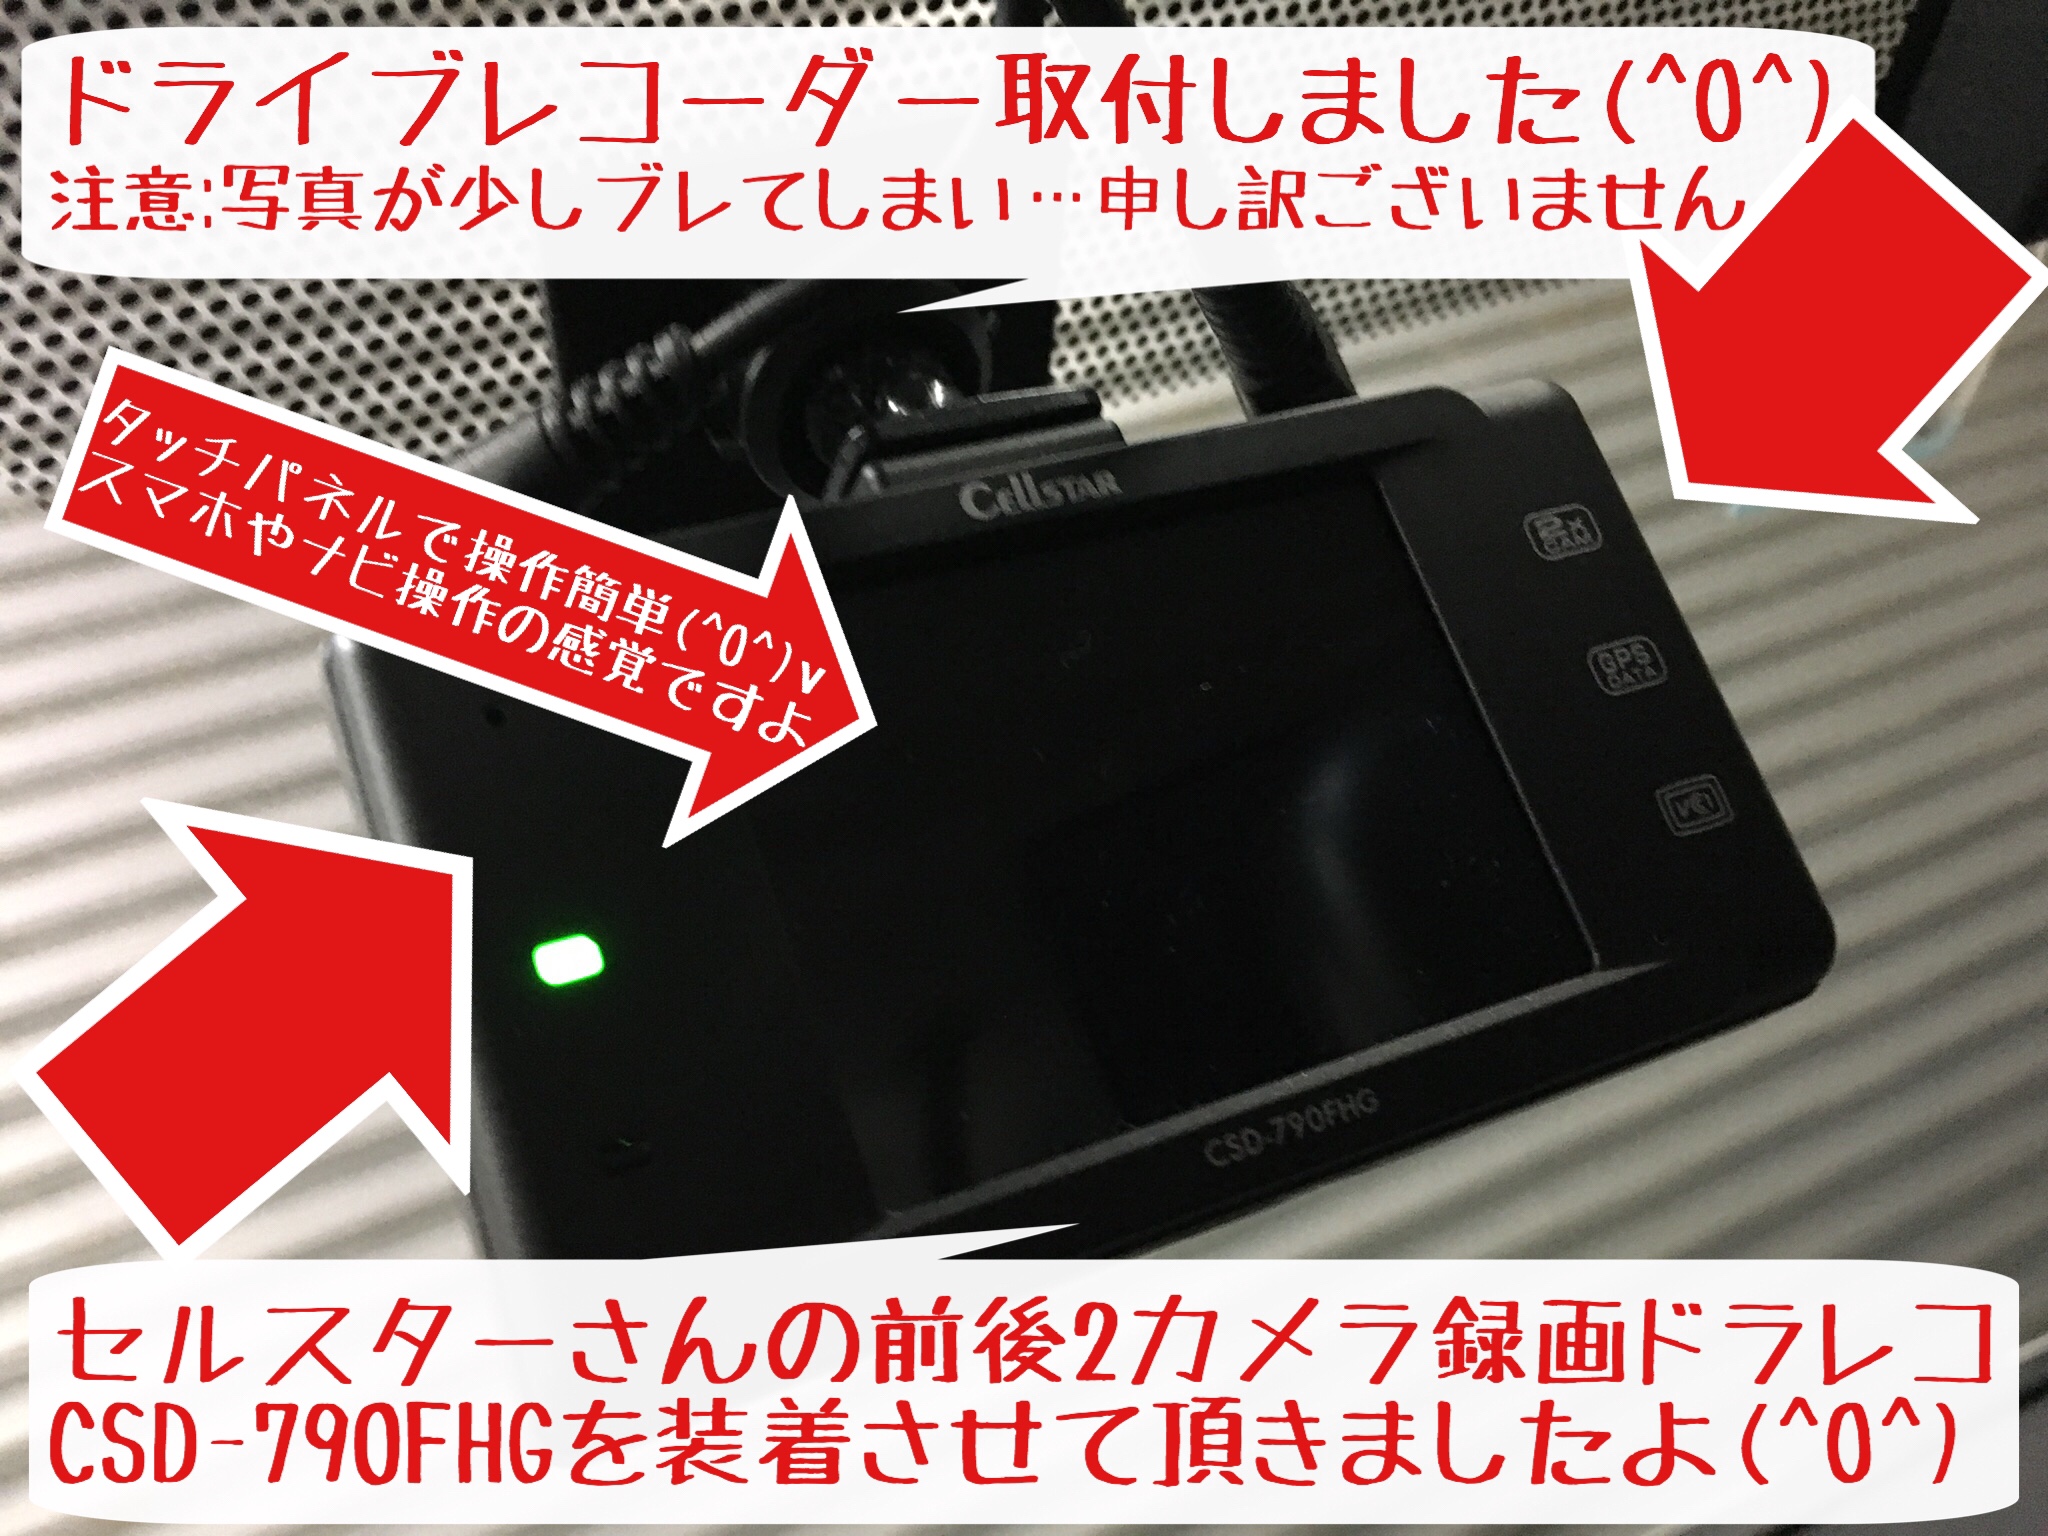 分離型セパレート型撮影タイプCSD-790FHG セルスタードライブレコーダー 2カメラドライブレコーダー